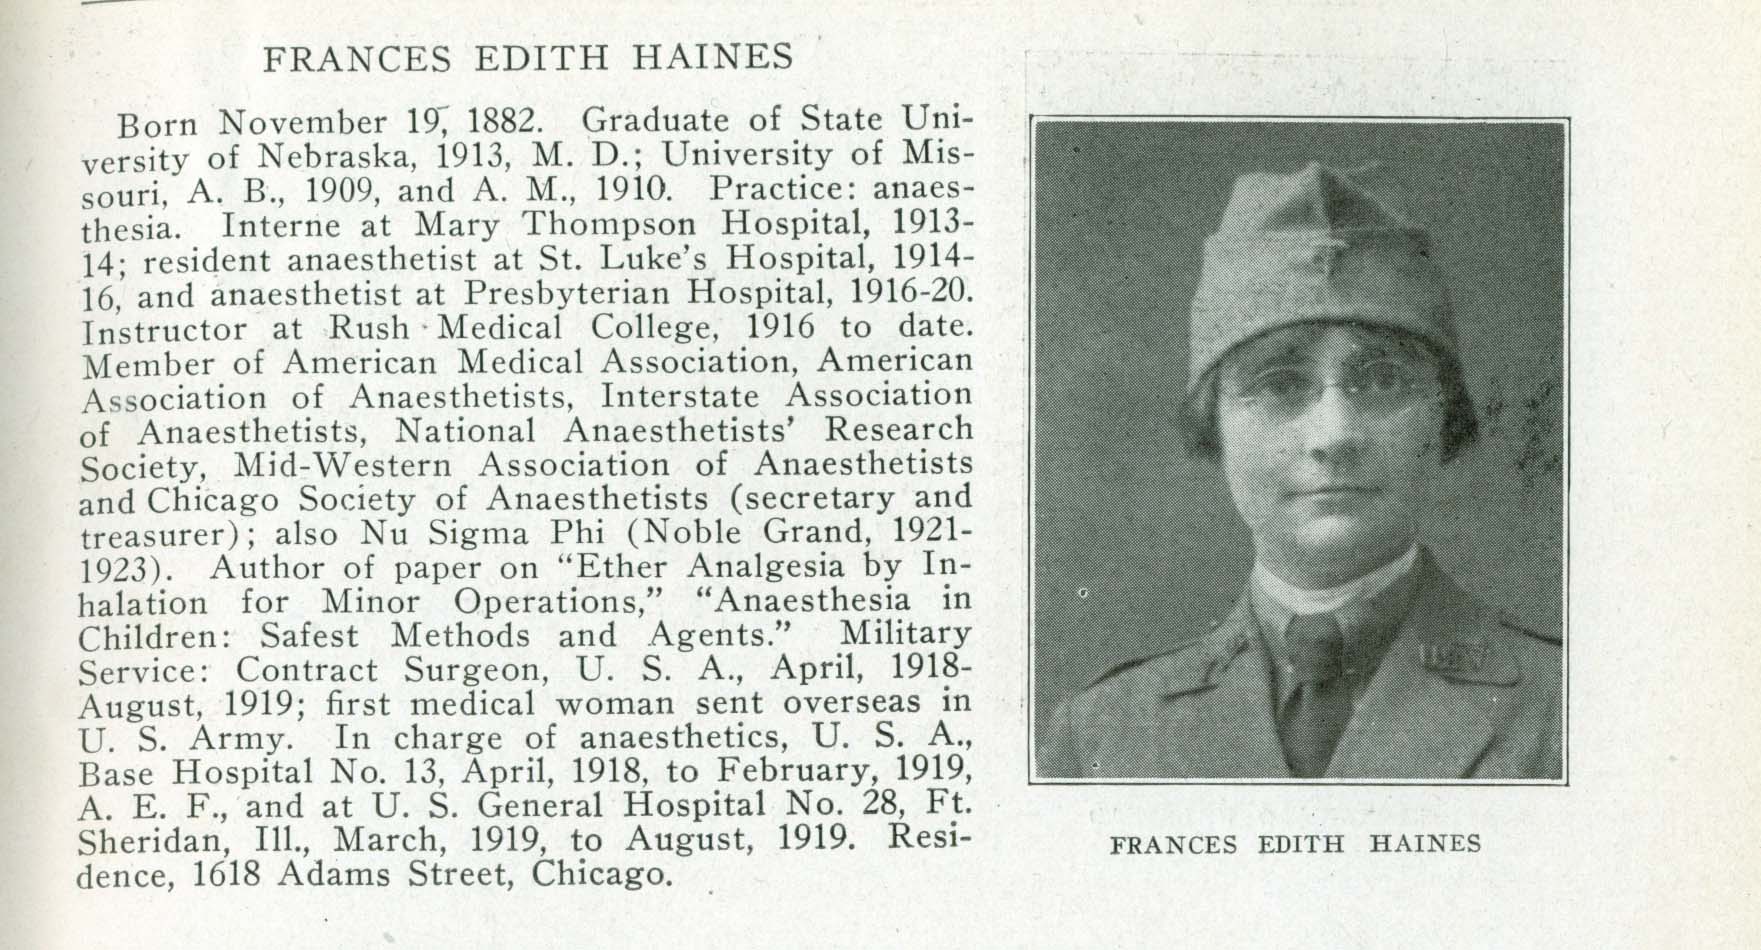 Frances Edith Haines